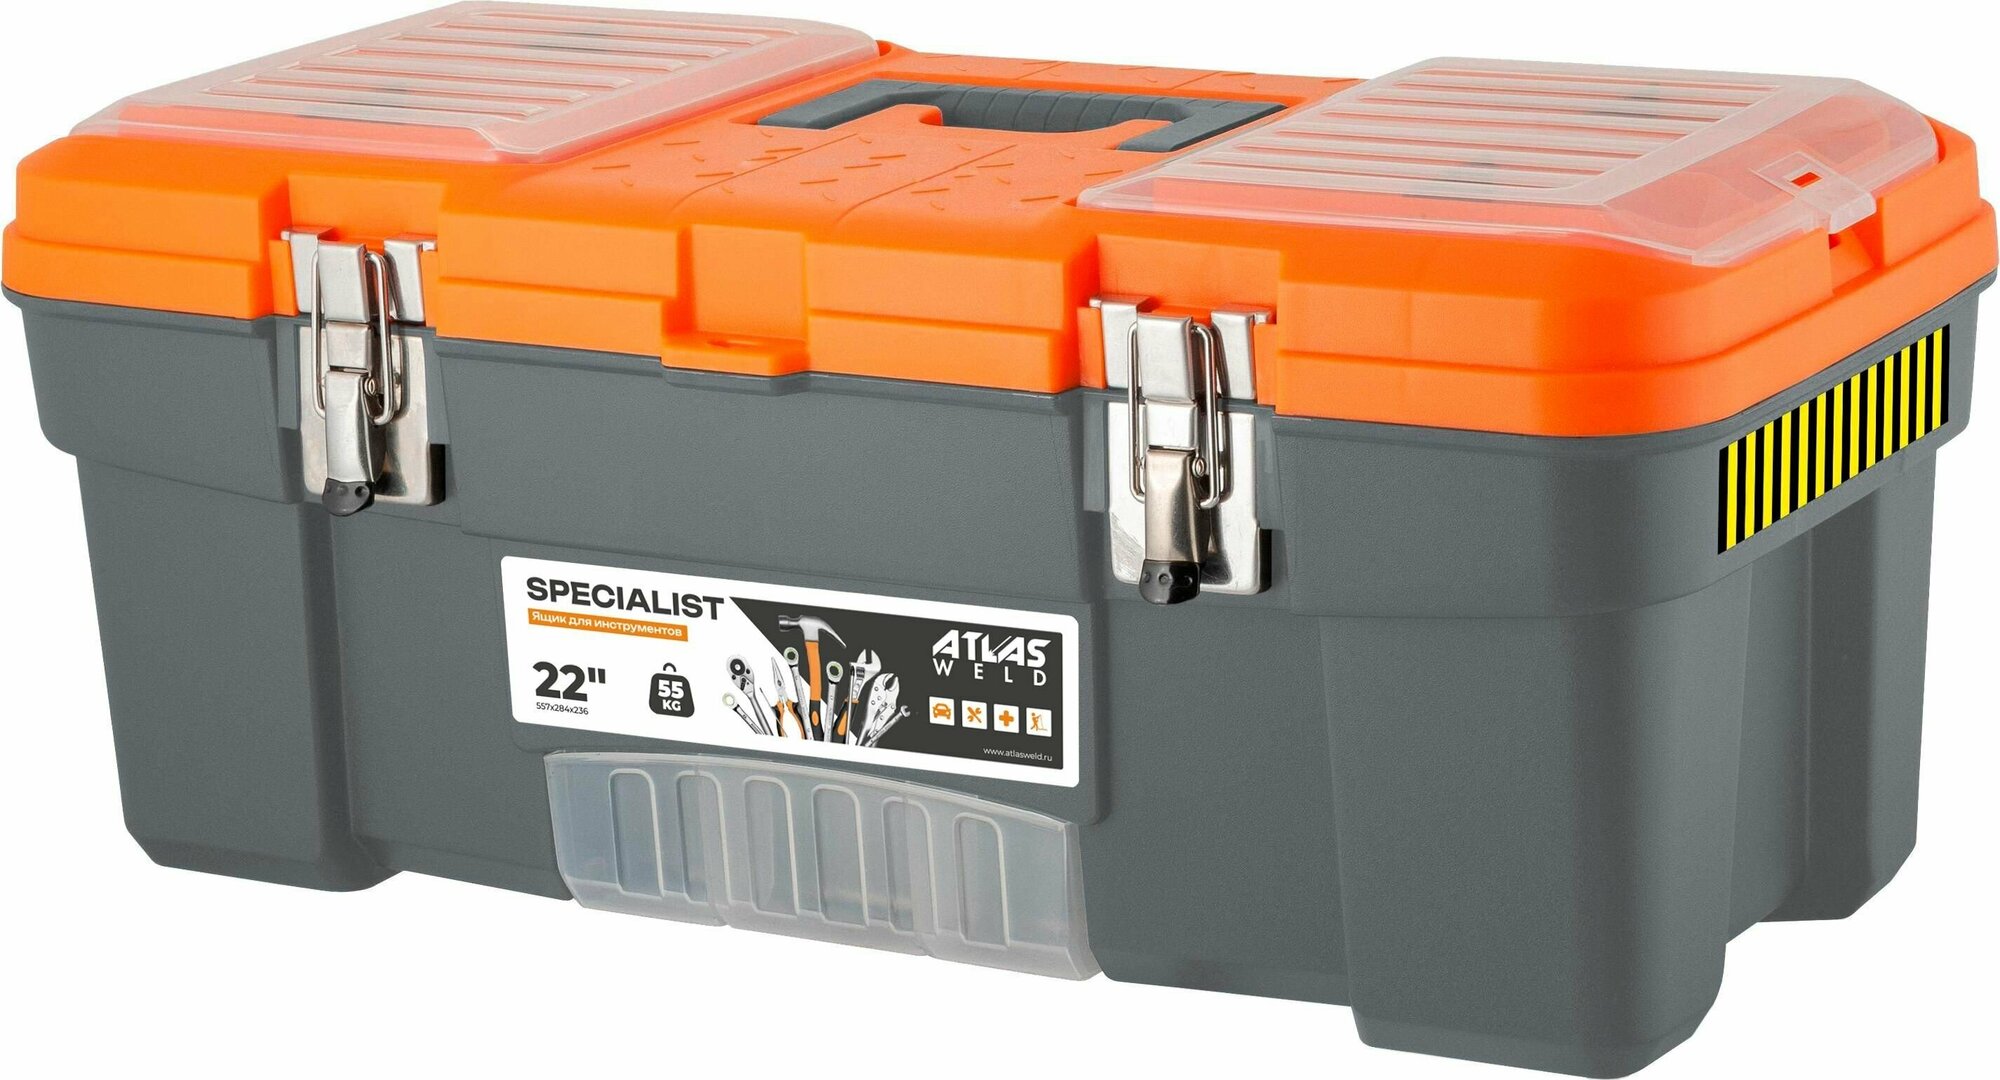 Ящик для инструментов Specialist 22" с металлическими замками серо-свинцовый/оранжевый, 557х284х236